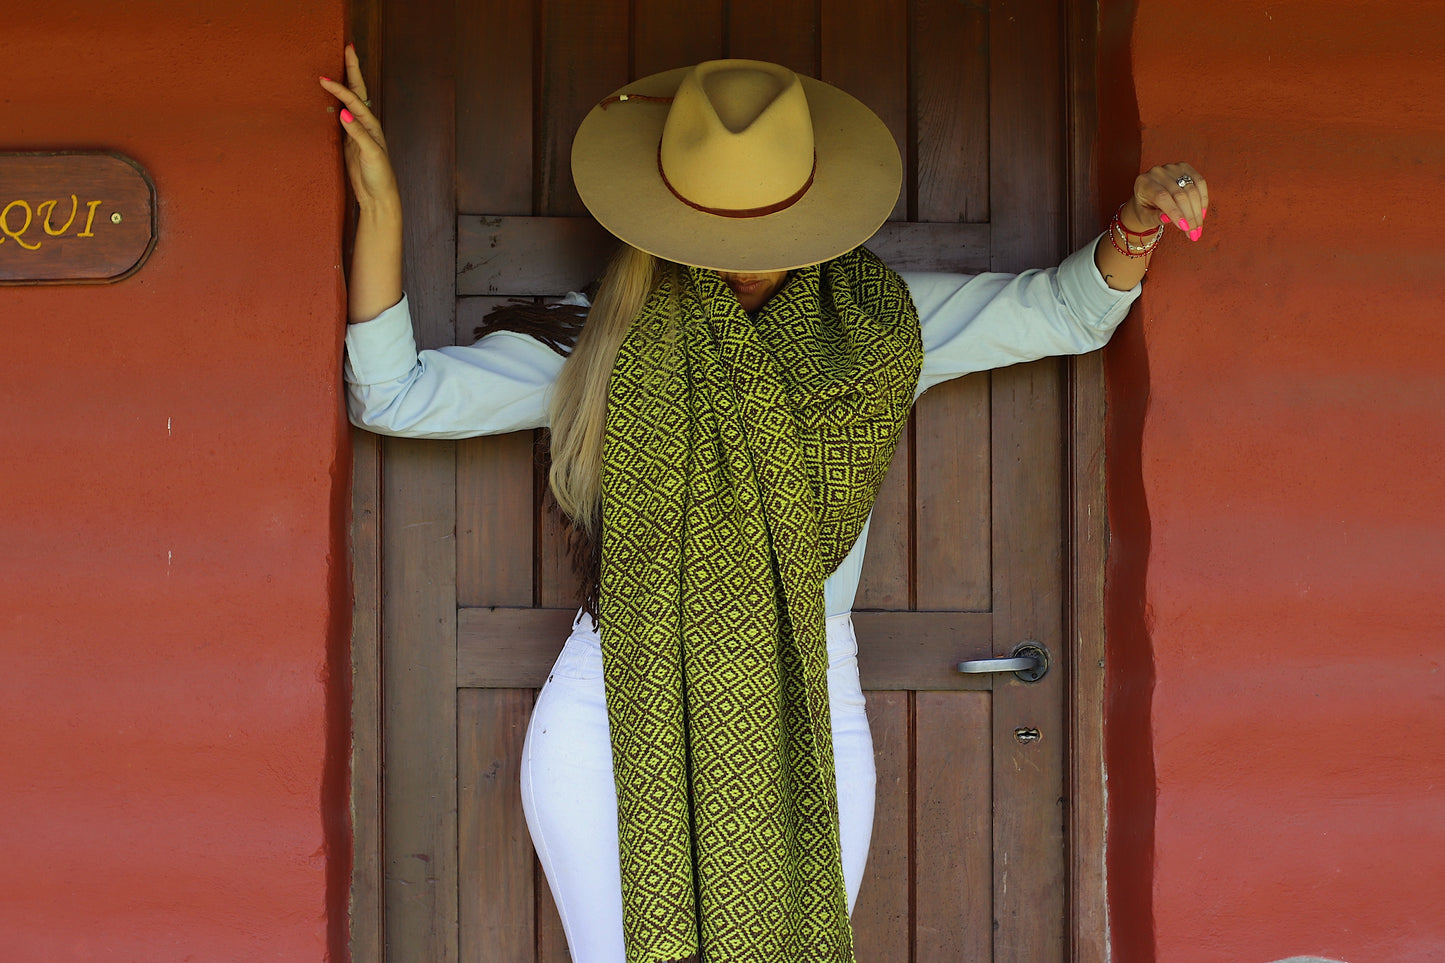 “UQUIA” Blanket Llama Premium Yarn